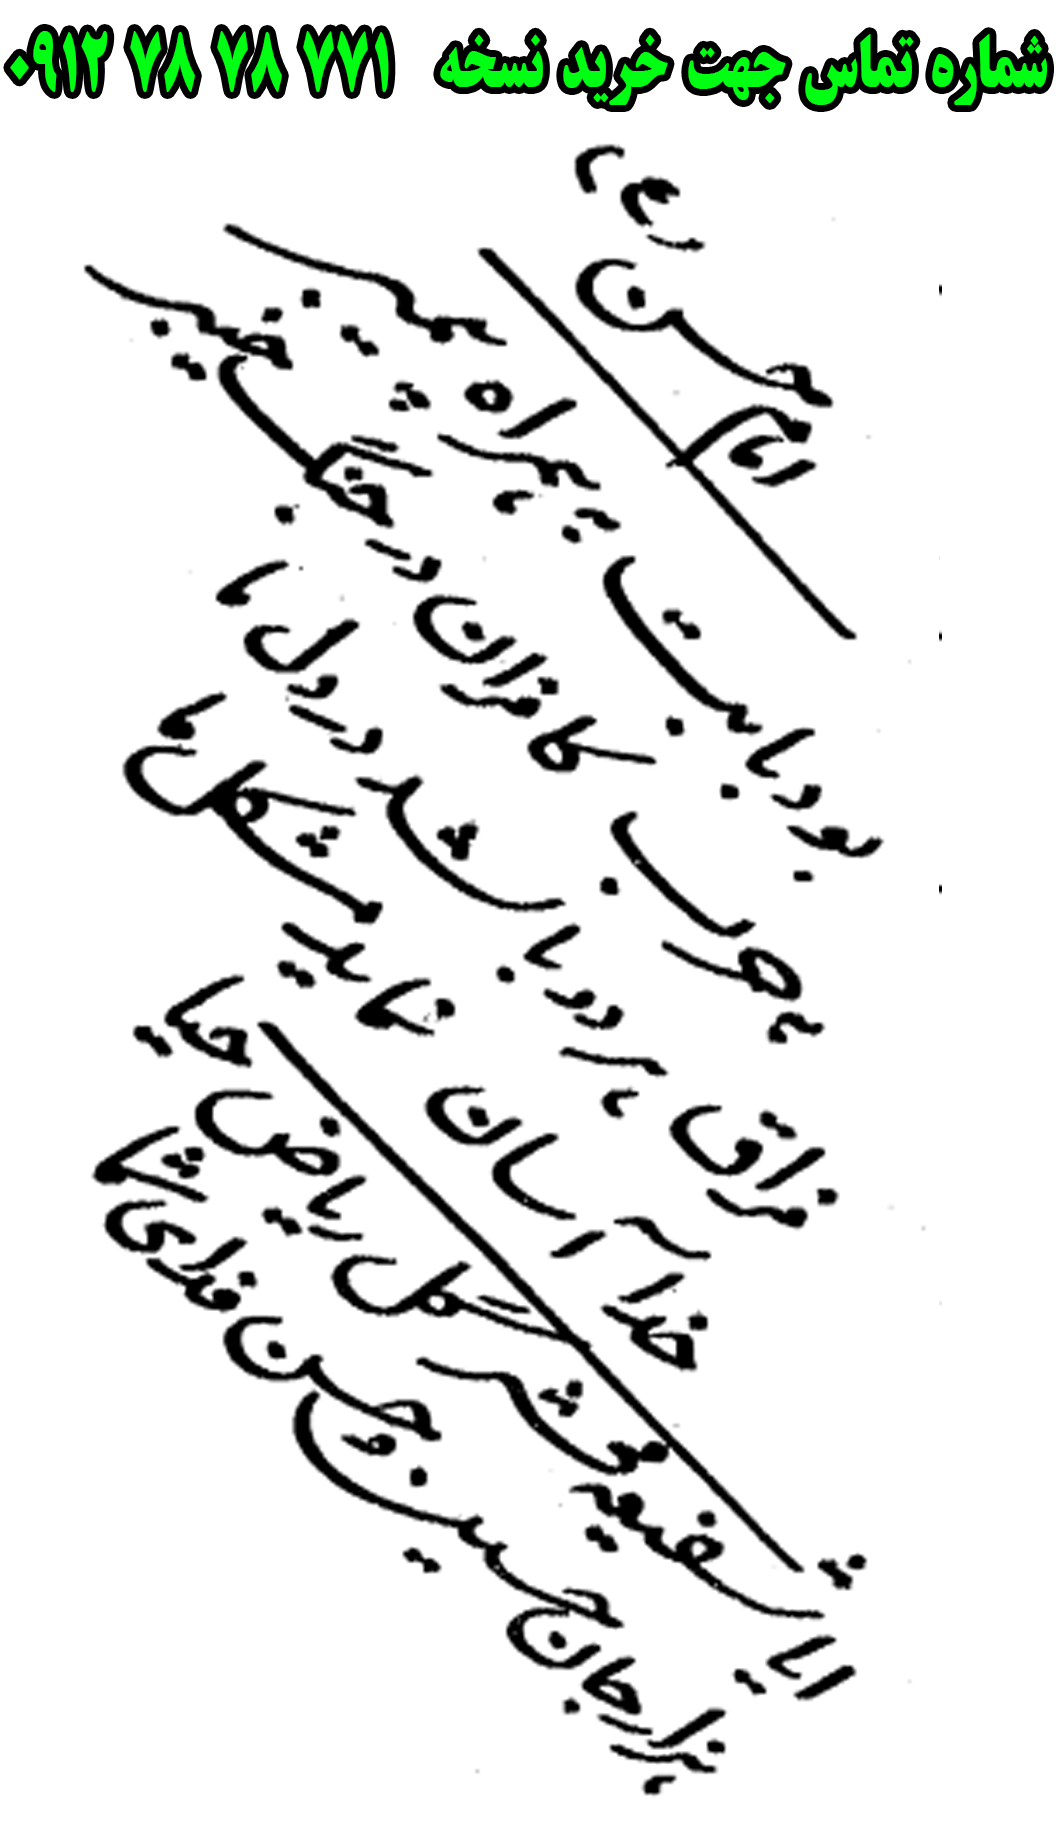 ارسال پستی نسخه تعزیه کامل امام حسین در تعزیه صالح یهود 09127878771